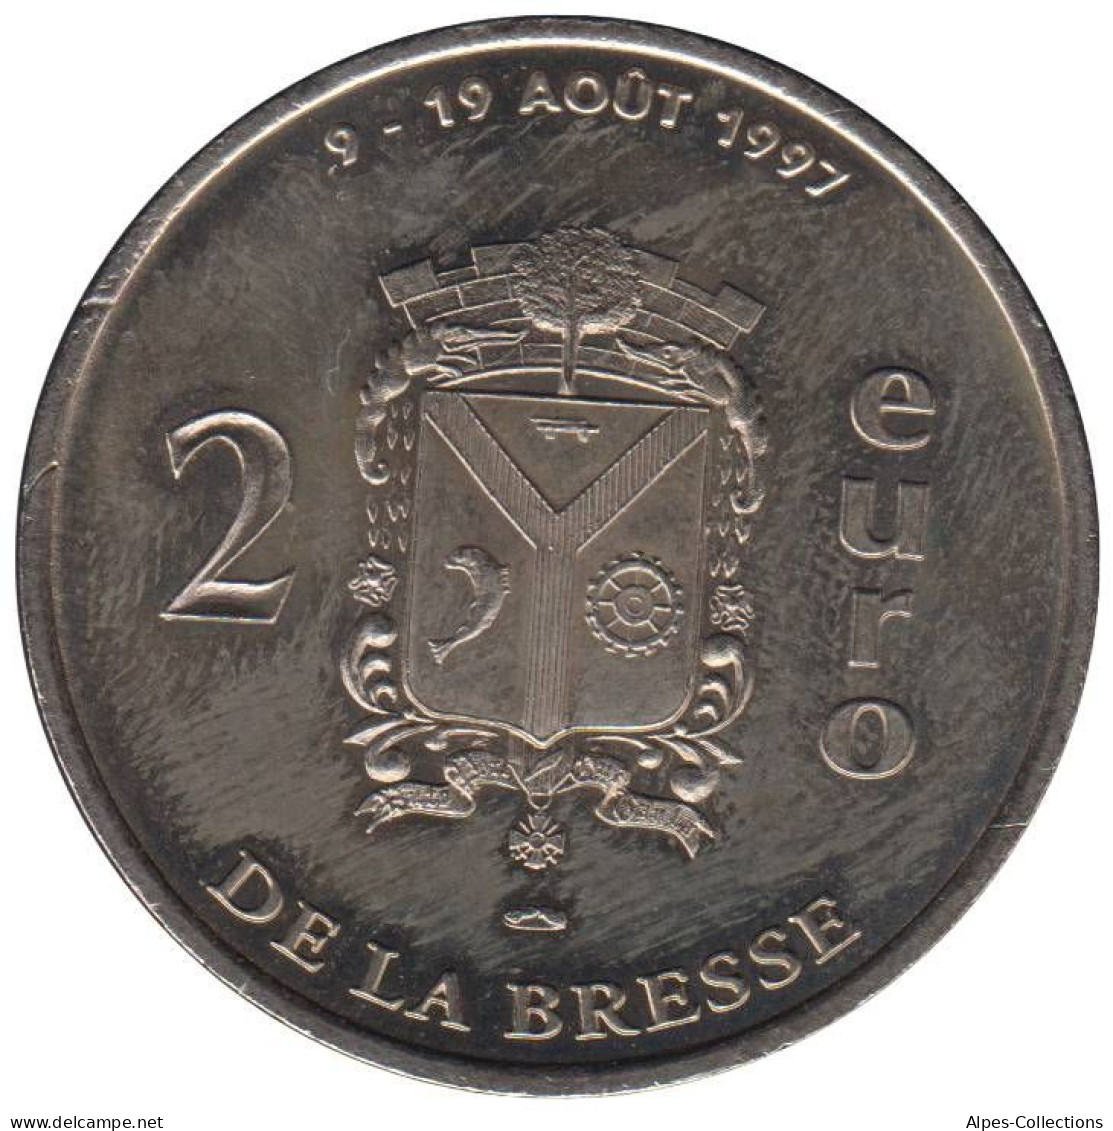 LA BRESSE - EU0020.1 - 2 EURO DES VILLES - Réf: T305 - 1997 - Euros Of The Cities